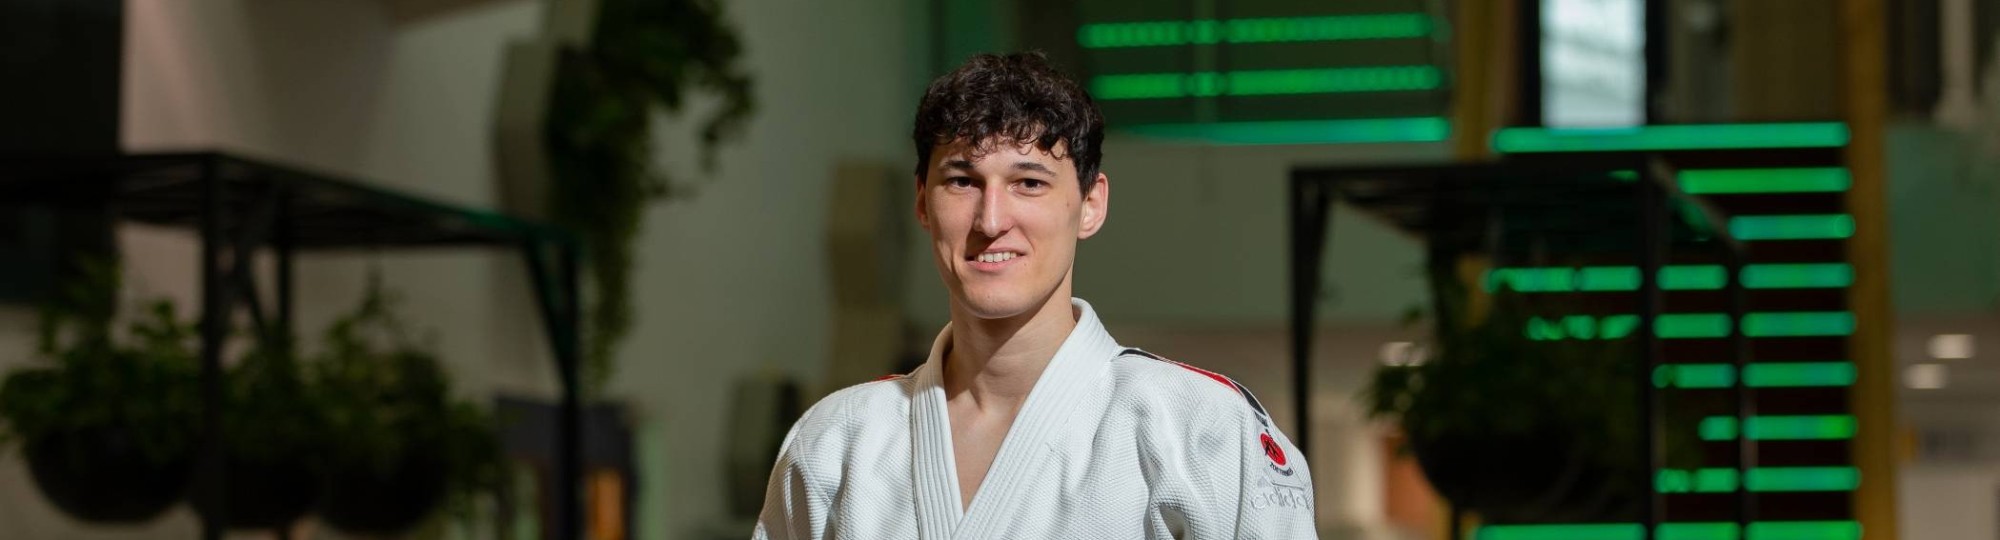 Naast zijn studie Bio-informatica is Ryan Engels ook topsporter. Zijn sport is jiu jitsu. 